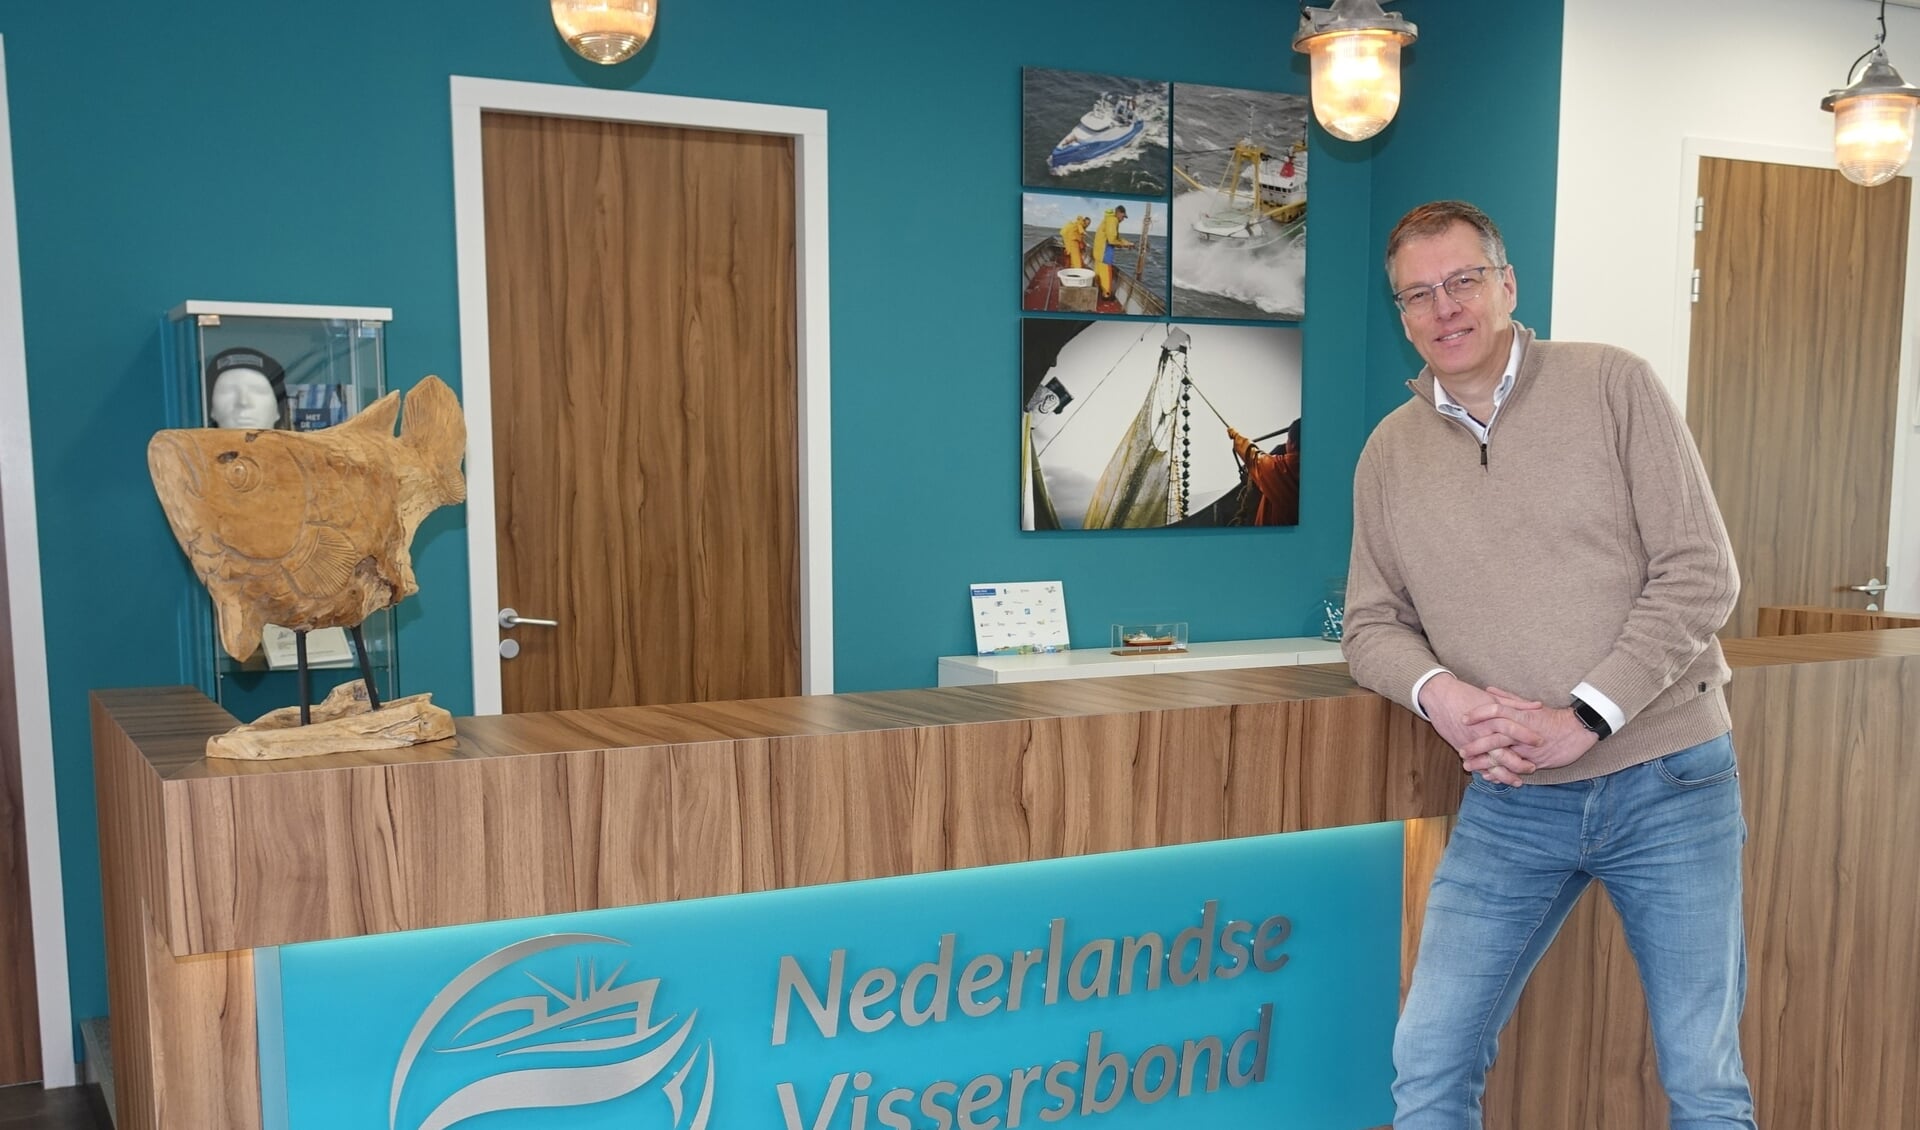 H Vandaag is de laatste werkdag van Derk Jan Berends bij de Nederlandse Vissersbond. ,,De visserij heeft een vaste plek in mijn hart gekregen.''